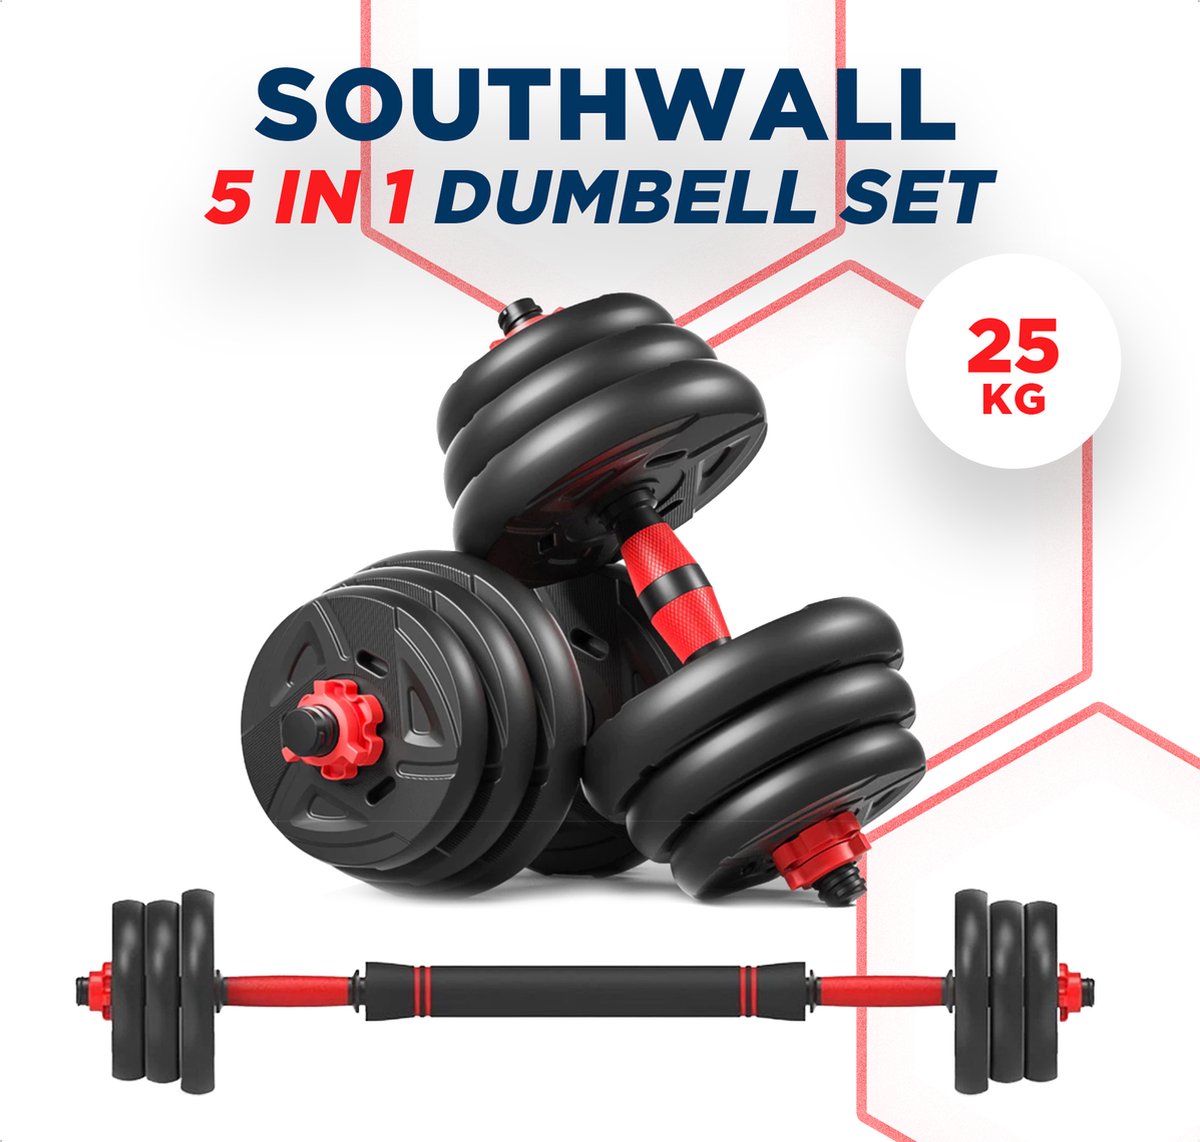 SOUTHWALL 5-in-1 Dumbbells tot 25 kg – Halterset – Dumbells Verstelbaar – Kettlebell – Halterstang – Gewichten – Barbell – Dumbells set – Fitness gewichten set – Gebruiksvriendelijk – Multifunctioneel – Zwart/Rood